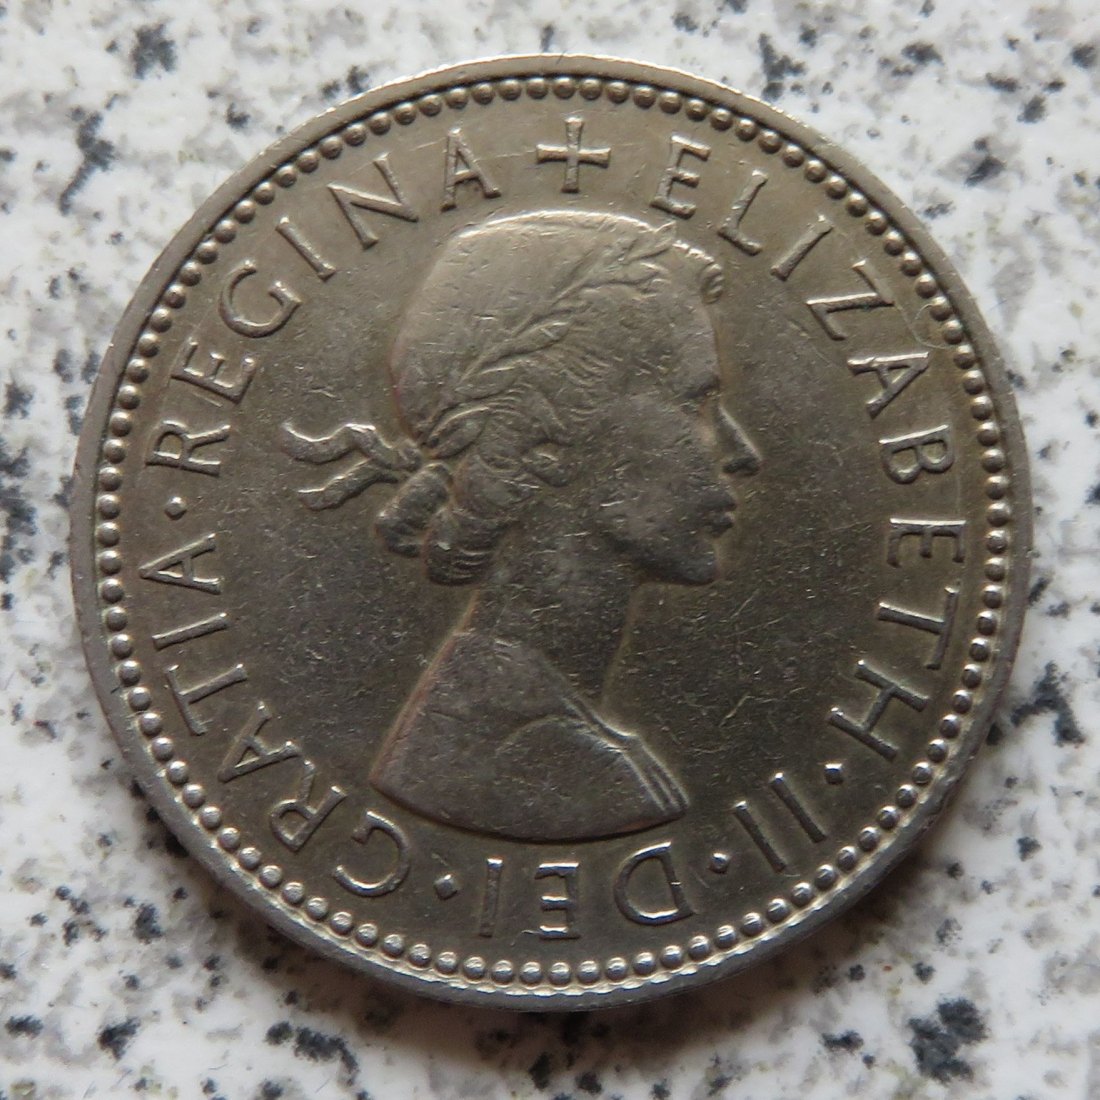  Großbritannien 1 Shilling 1959, Englisch (2)   